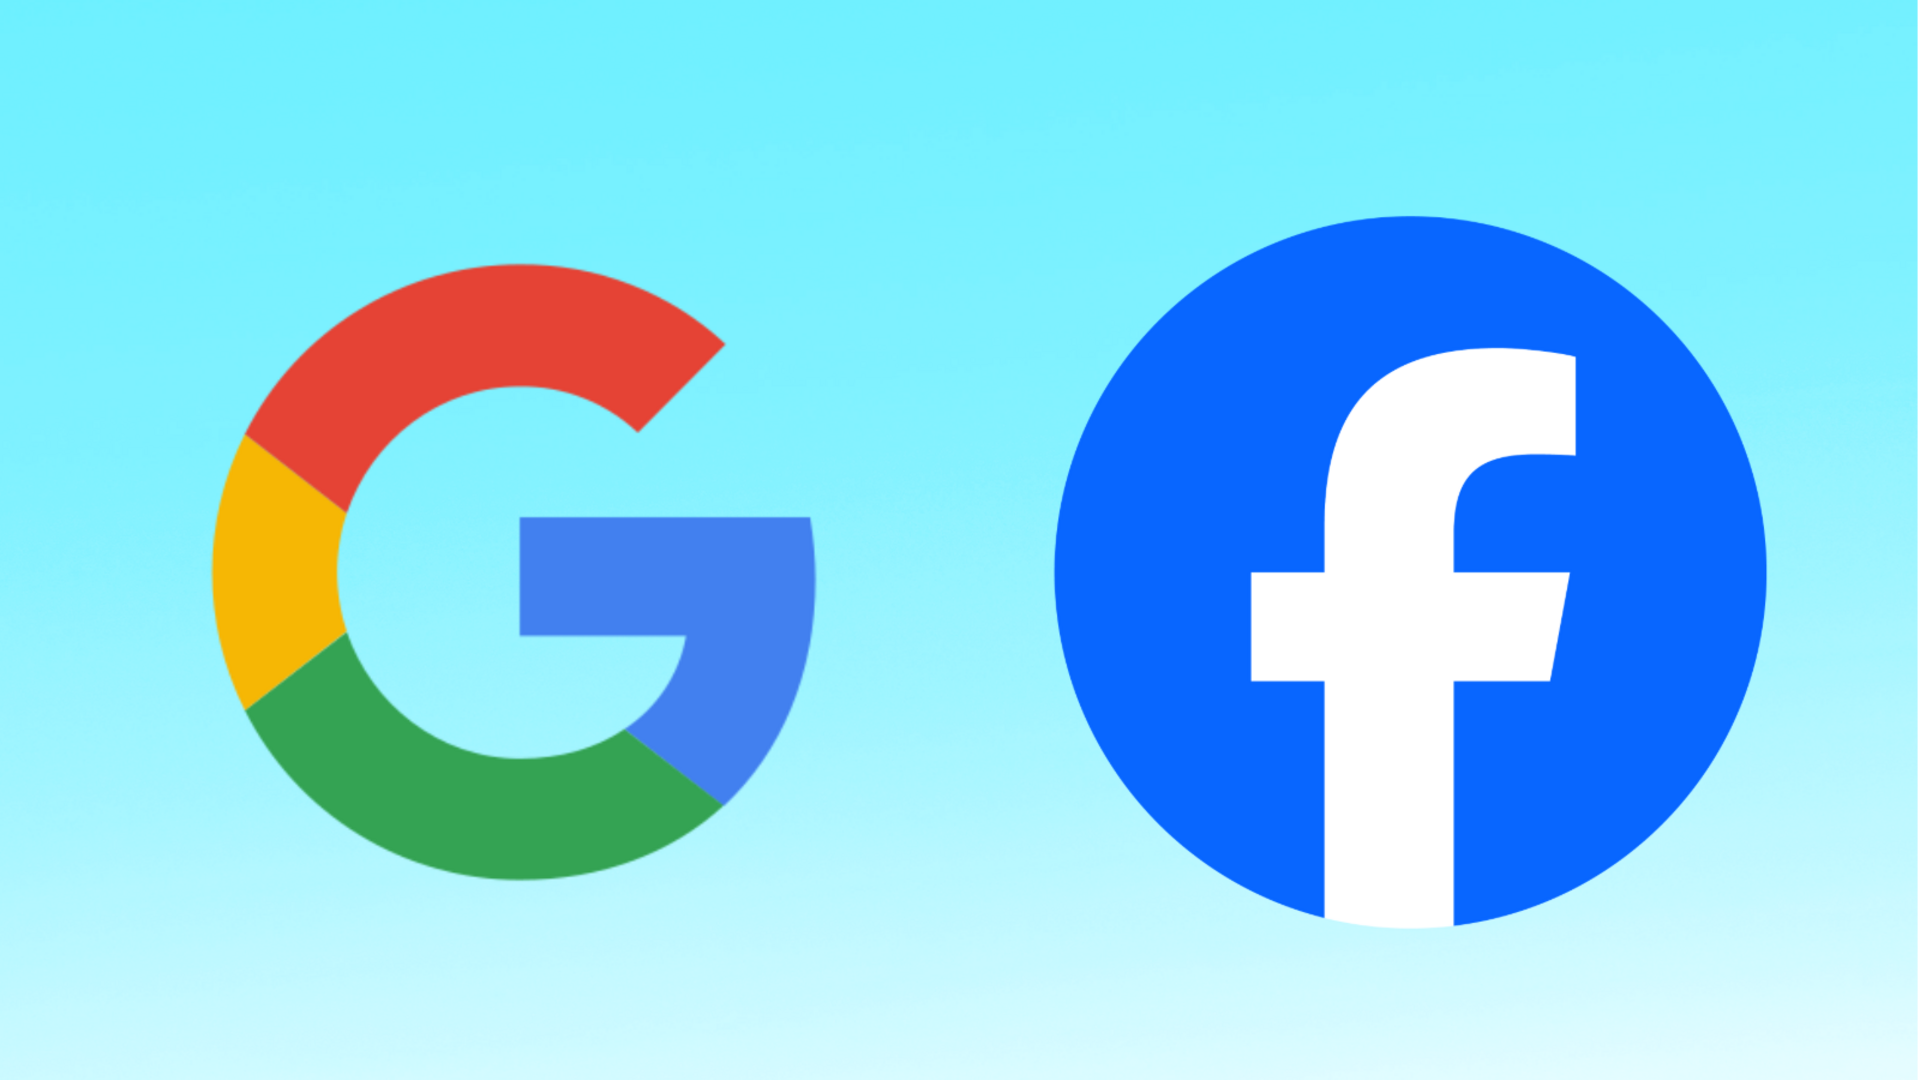 गूगल और फेसबुक बच्चों की ऐप्स से जुटाया डाटा लेने वाली सबसे बड़ी कंपनियां- अध्ययन